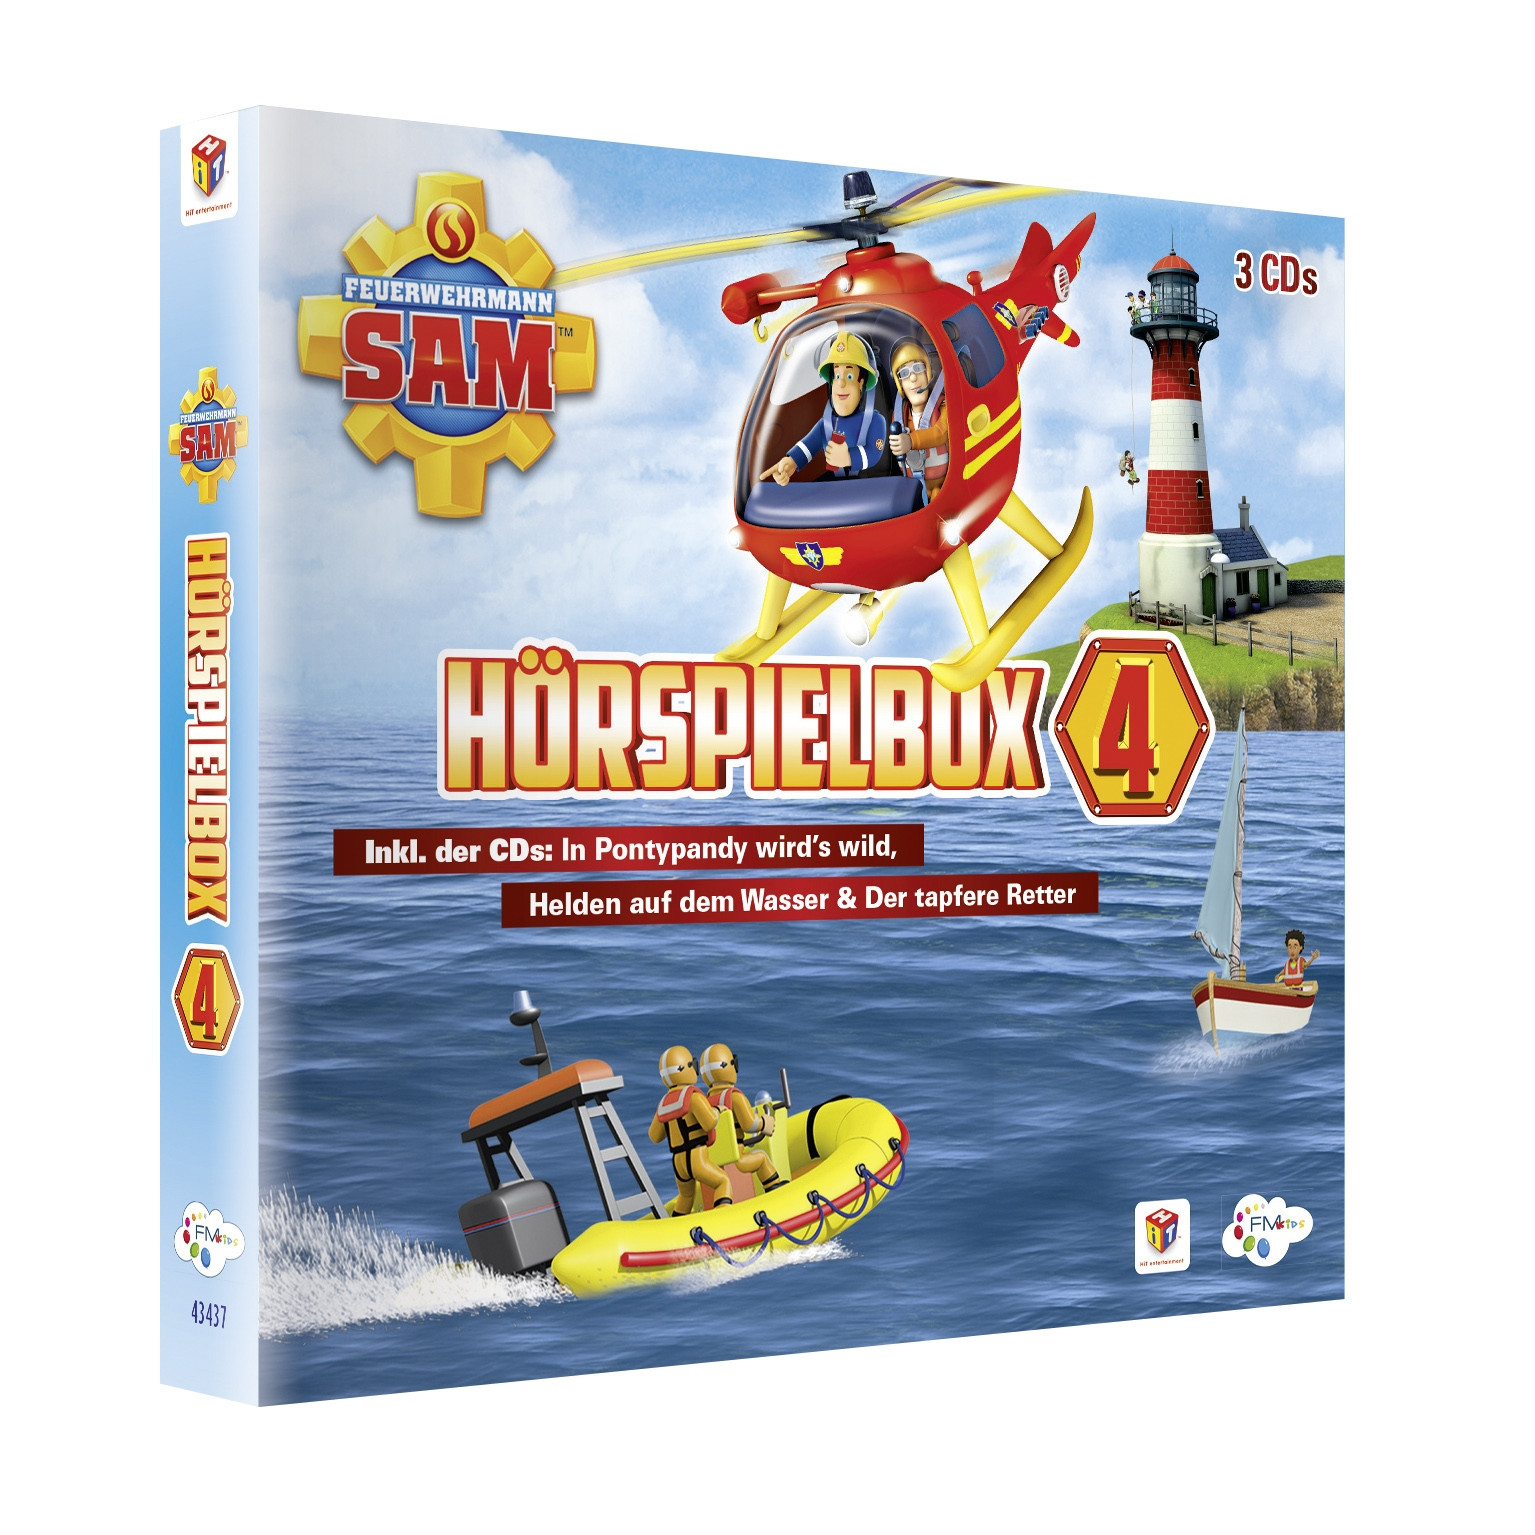 Feuerwehrmann Sam - Hörspiel Box 4 (3 CDs)